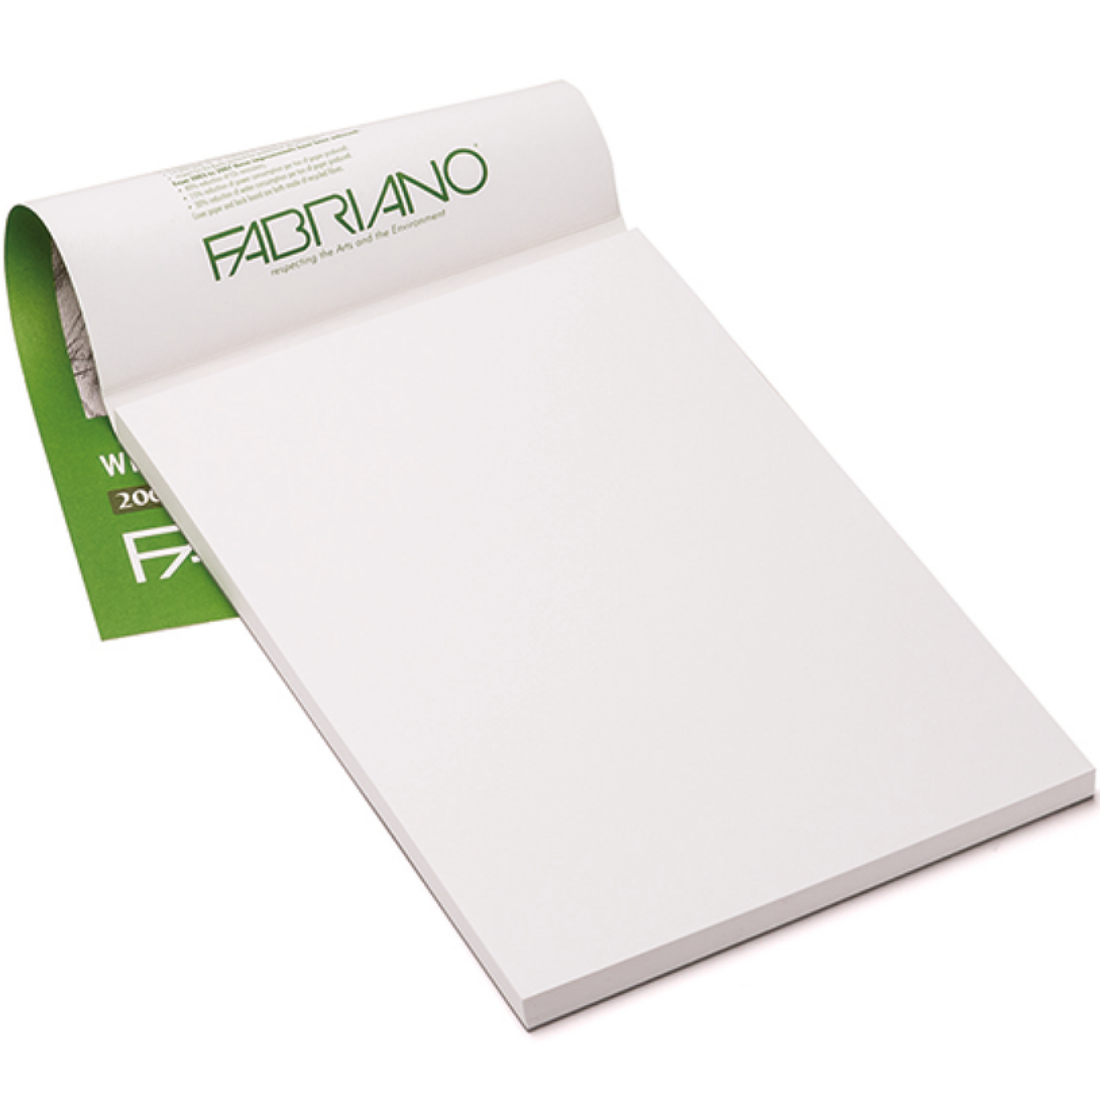 Bloco papel desenho Ecological branco A3 50f 200g Fabriano.